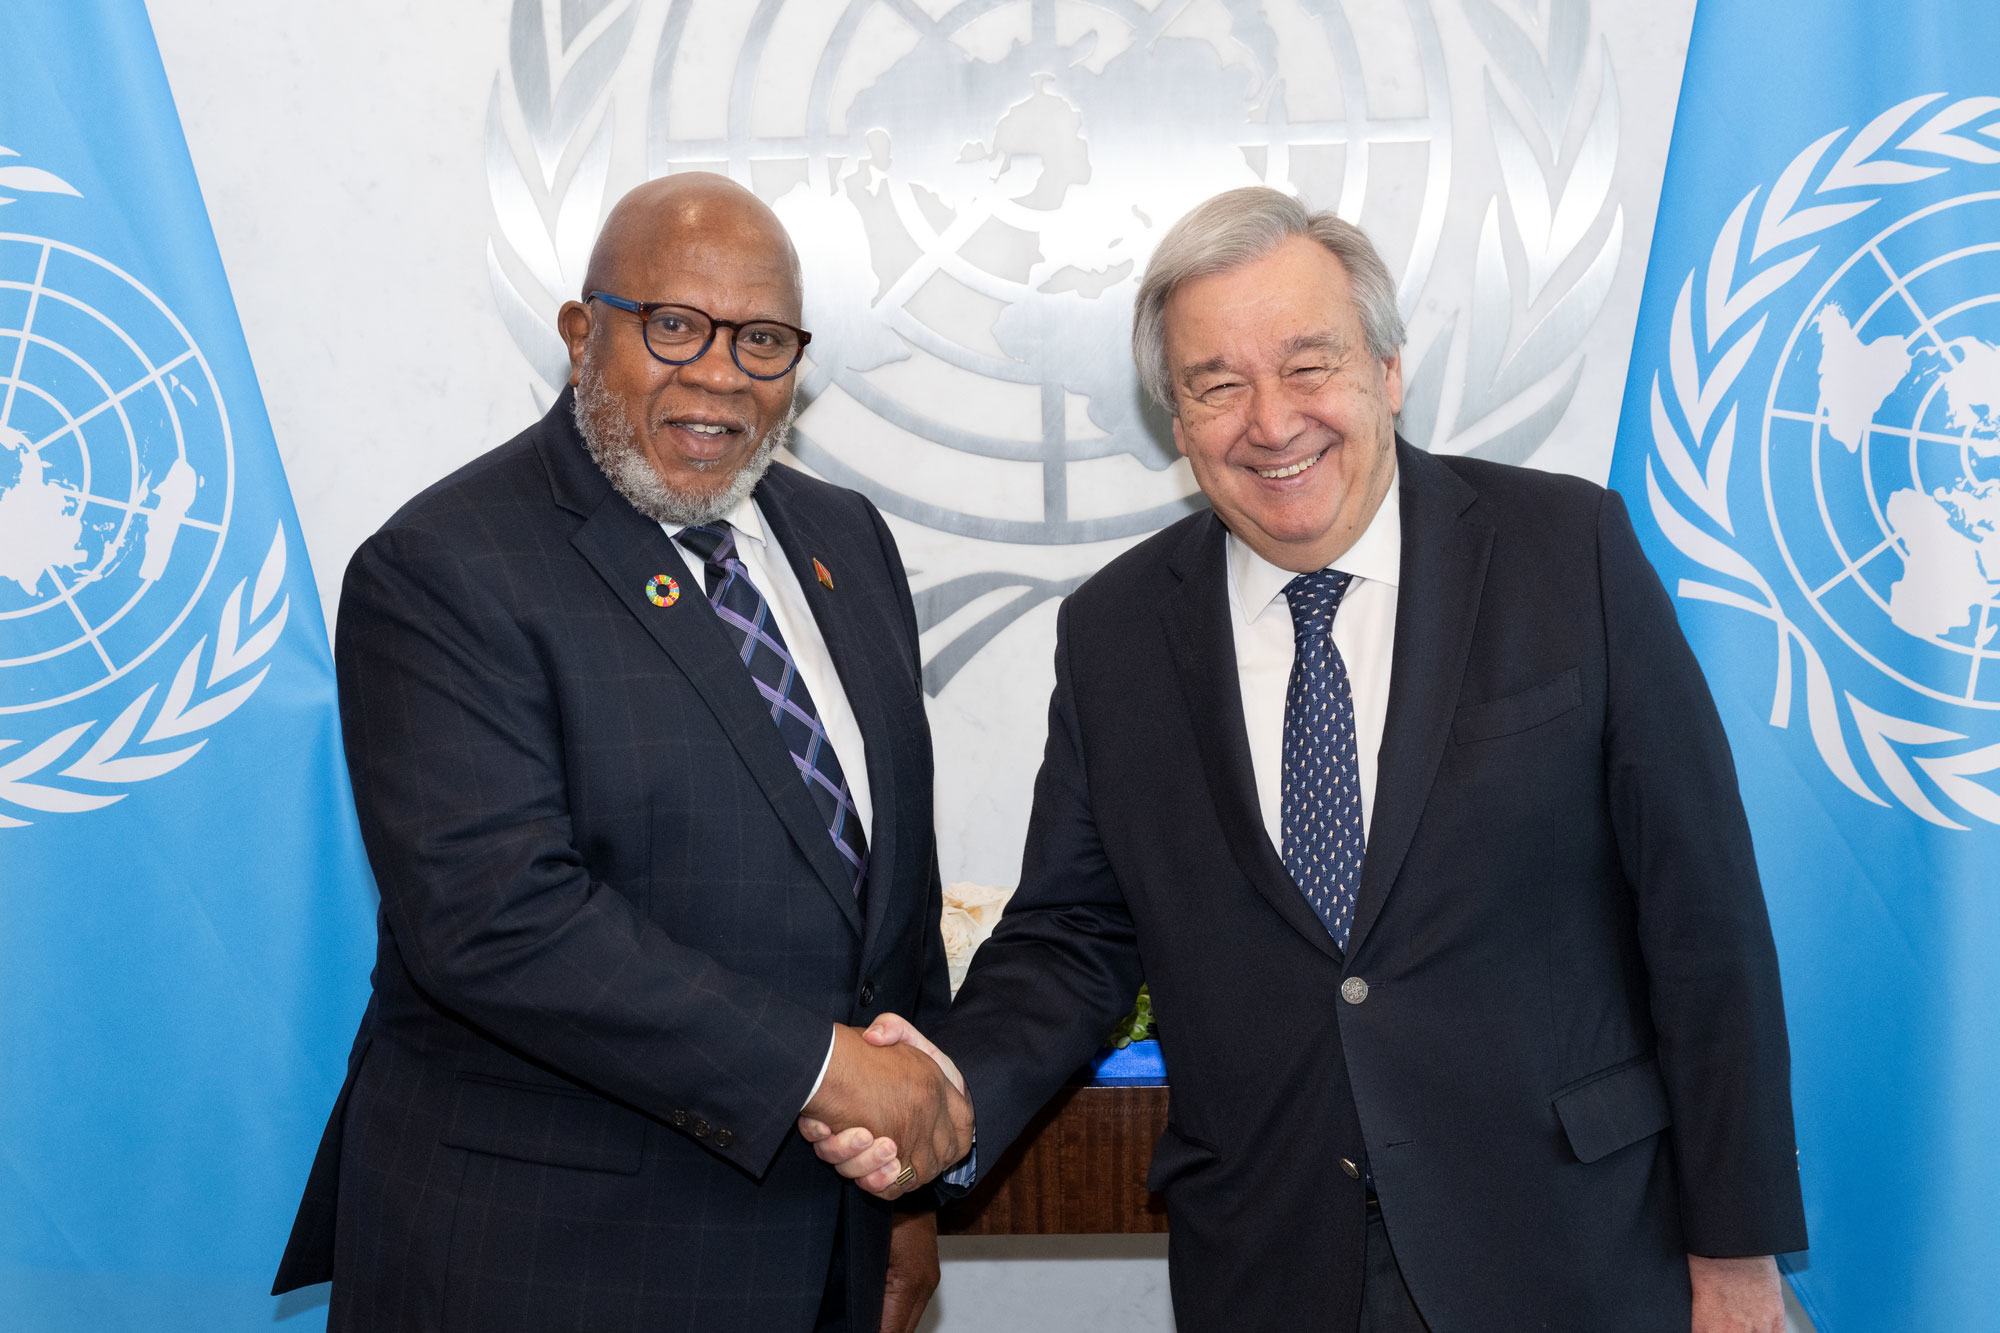 اقوام متحدہ کے سیکرٹری جنرل انتونیو گوتریش 78ویں جنرل اسمبلی کے منتخب صدر ٹرنیڈاڈ اور ٹوبیگو سے تعلق رکھنے والے سفیر ڈینس فرانسس کے ساتھ۔